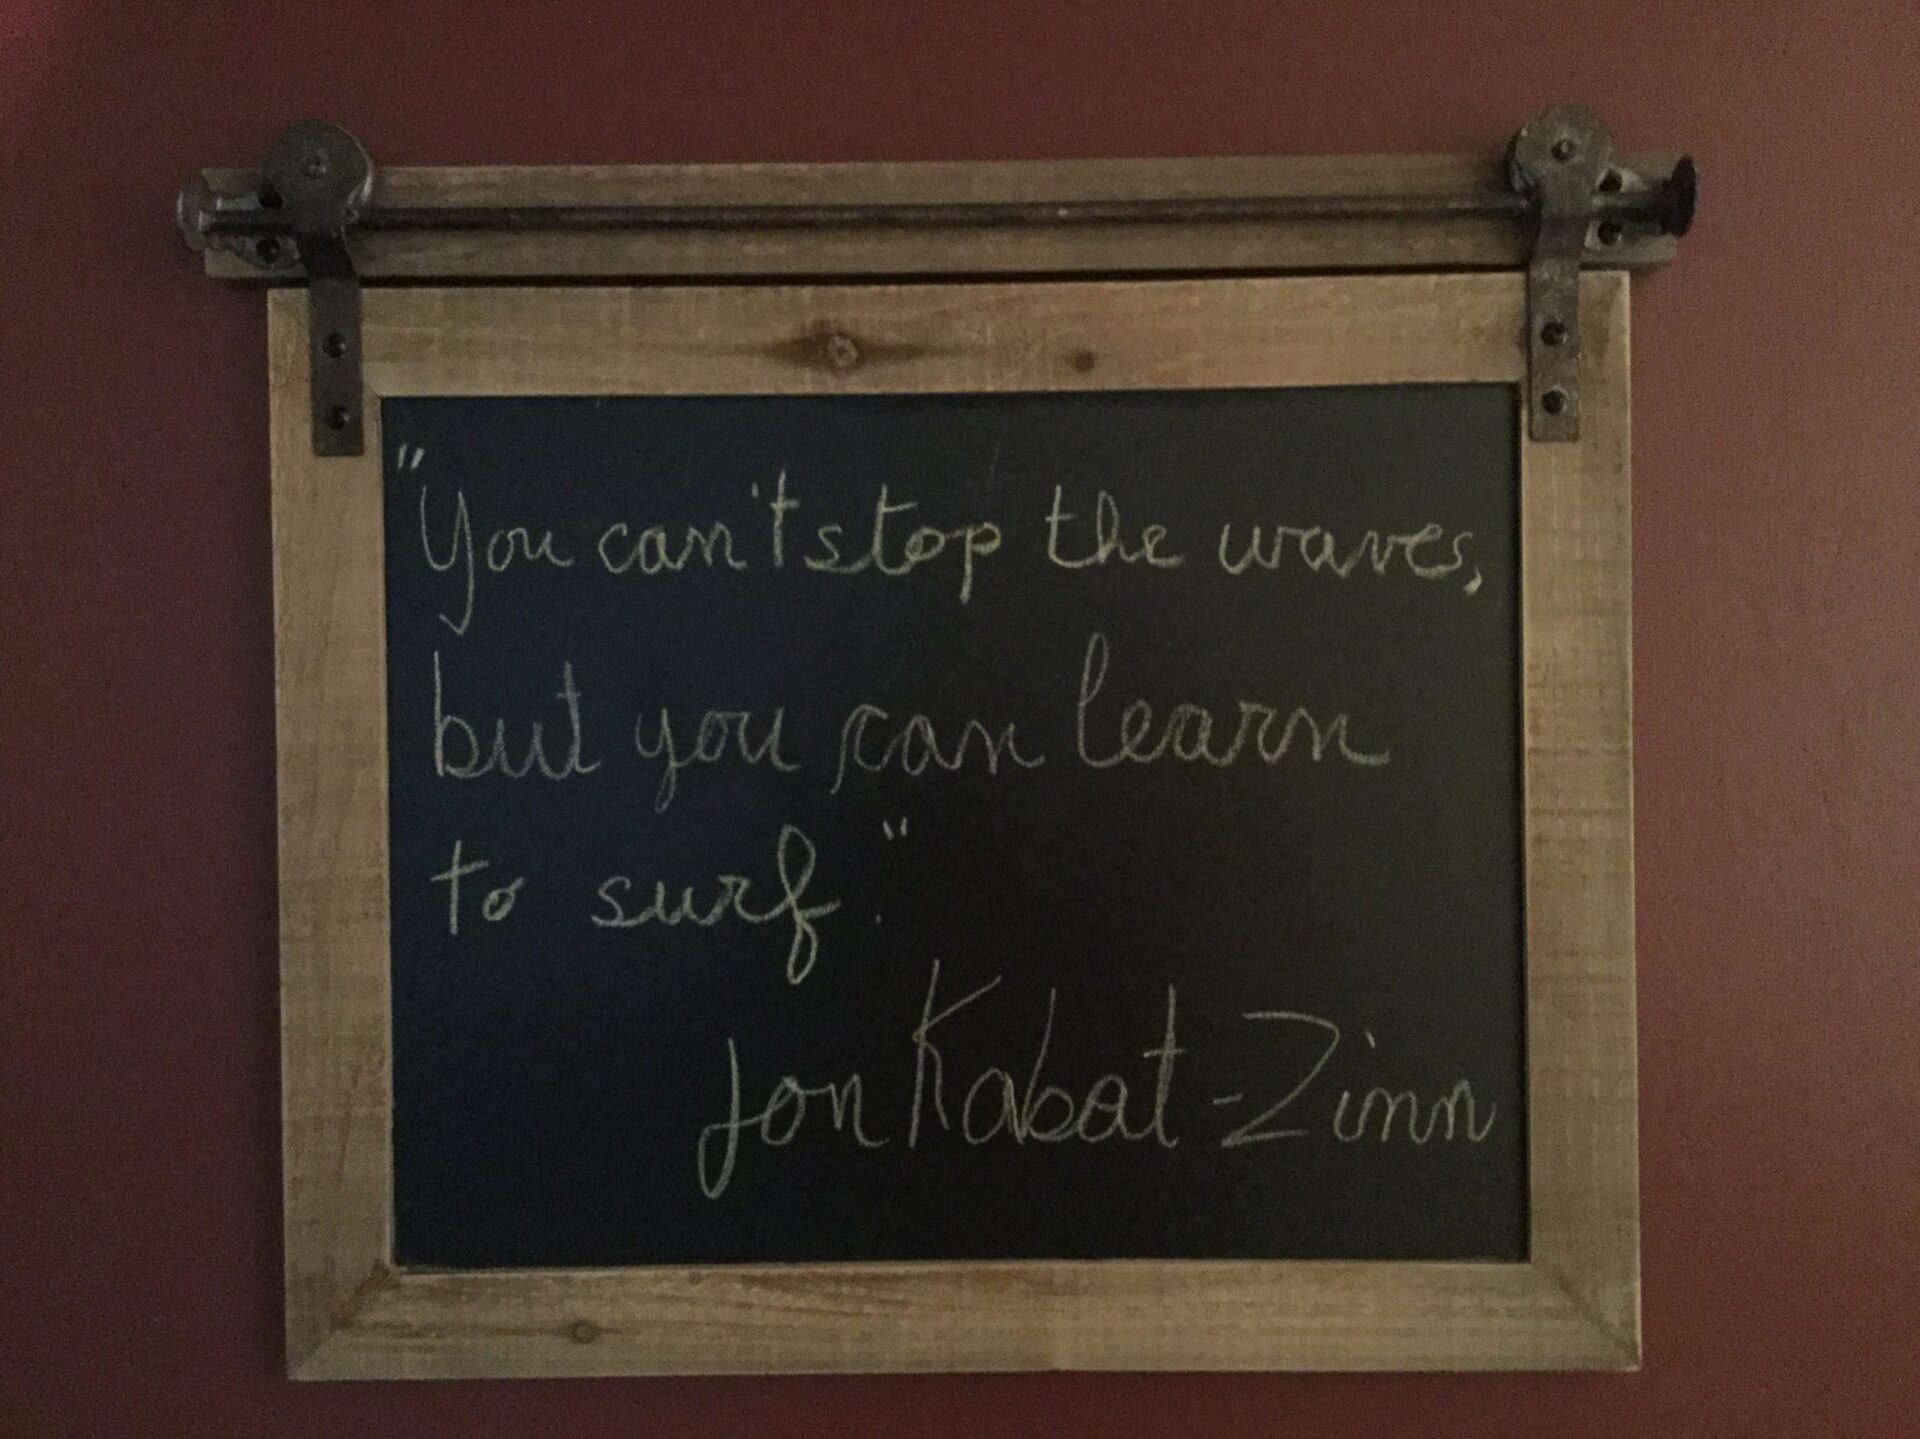 À mes amis surfers, une citation de Jon Kabat-Zinn